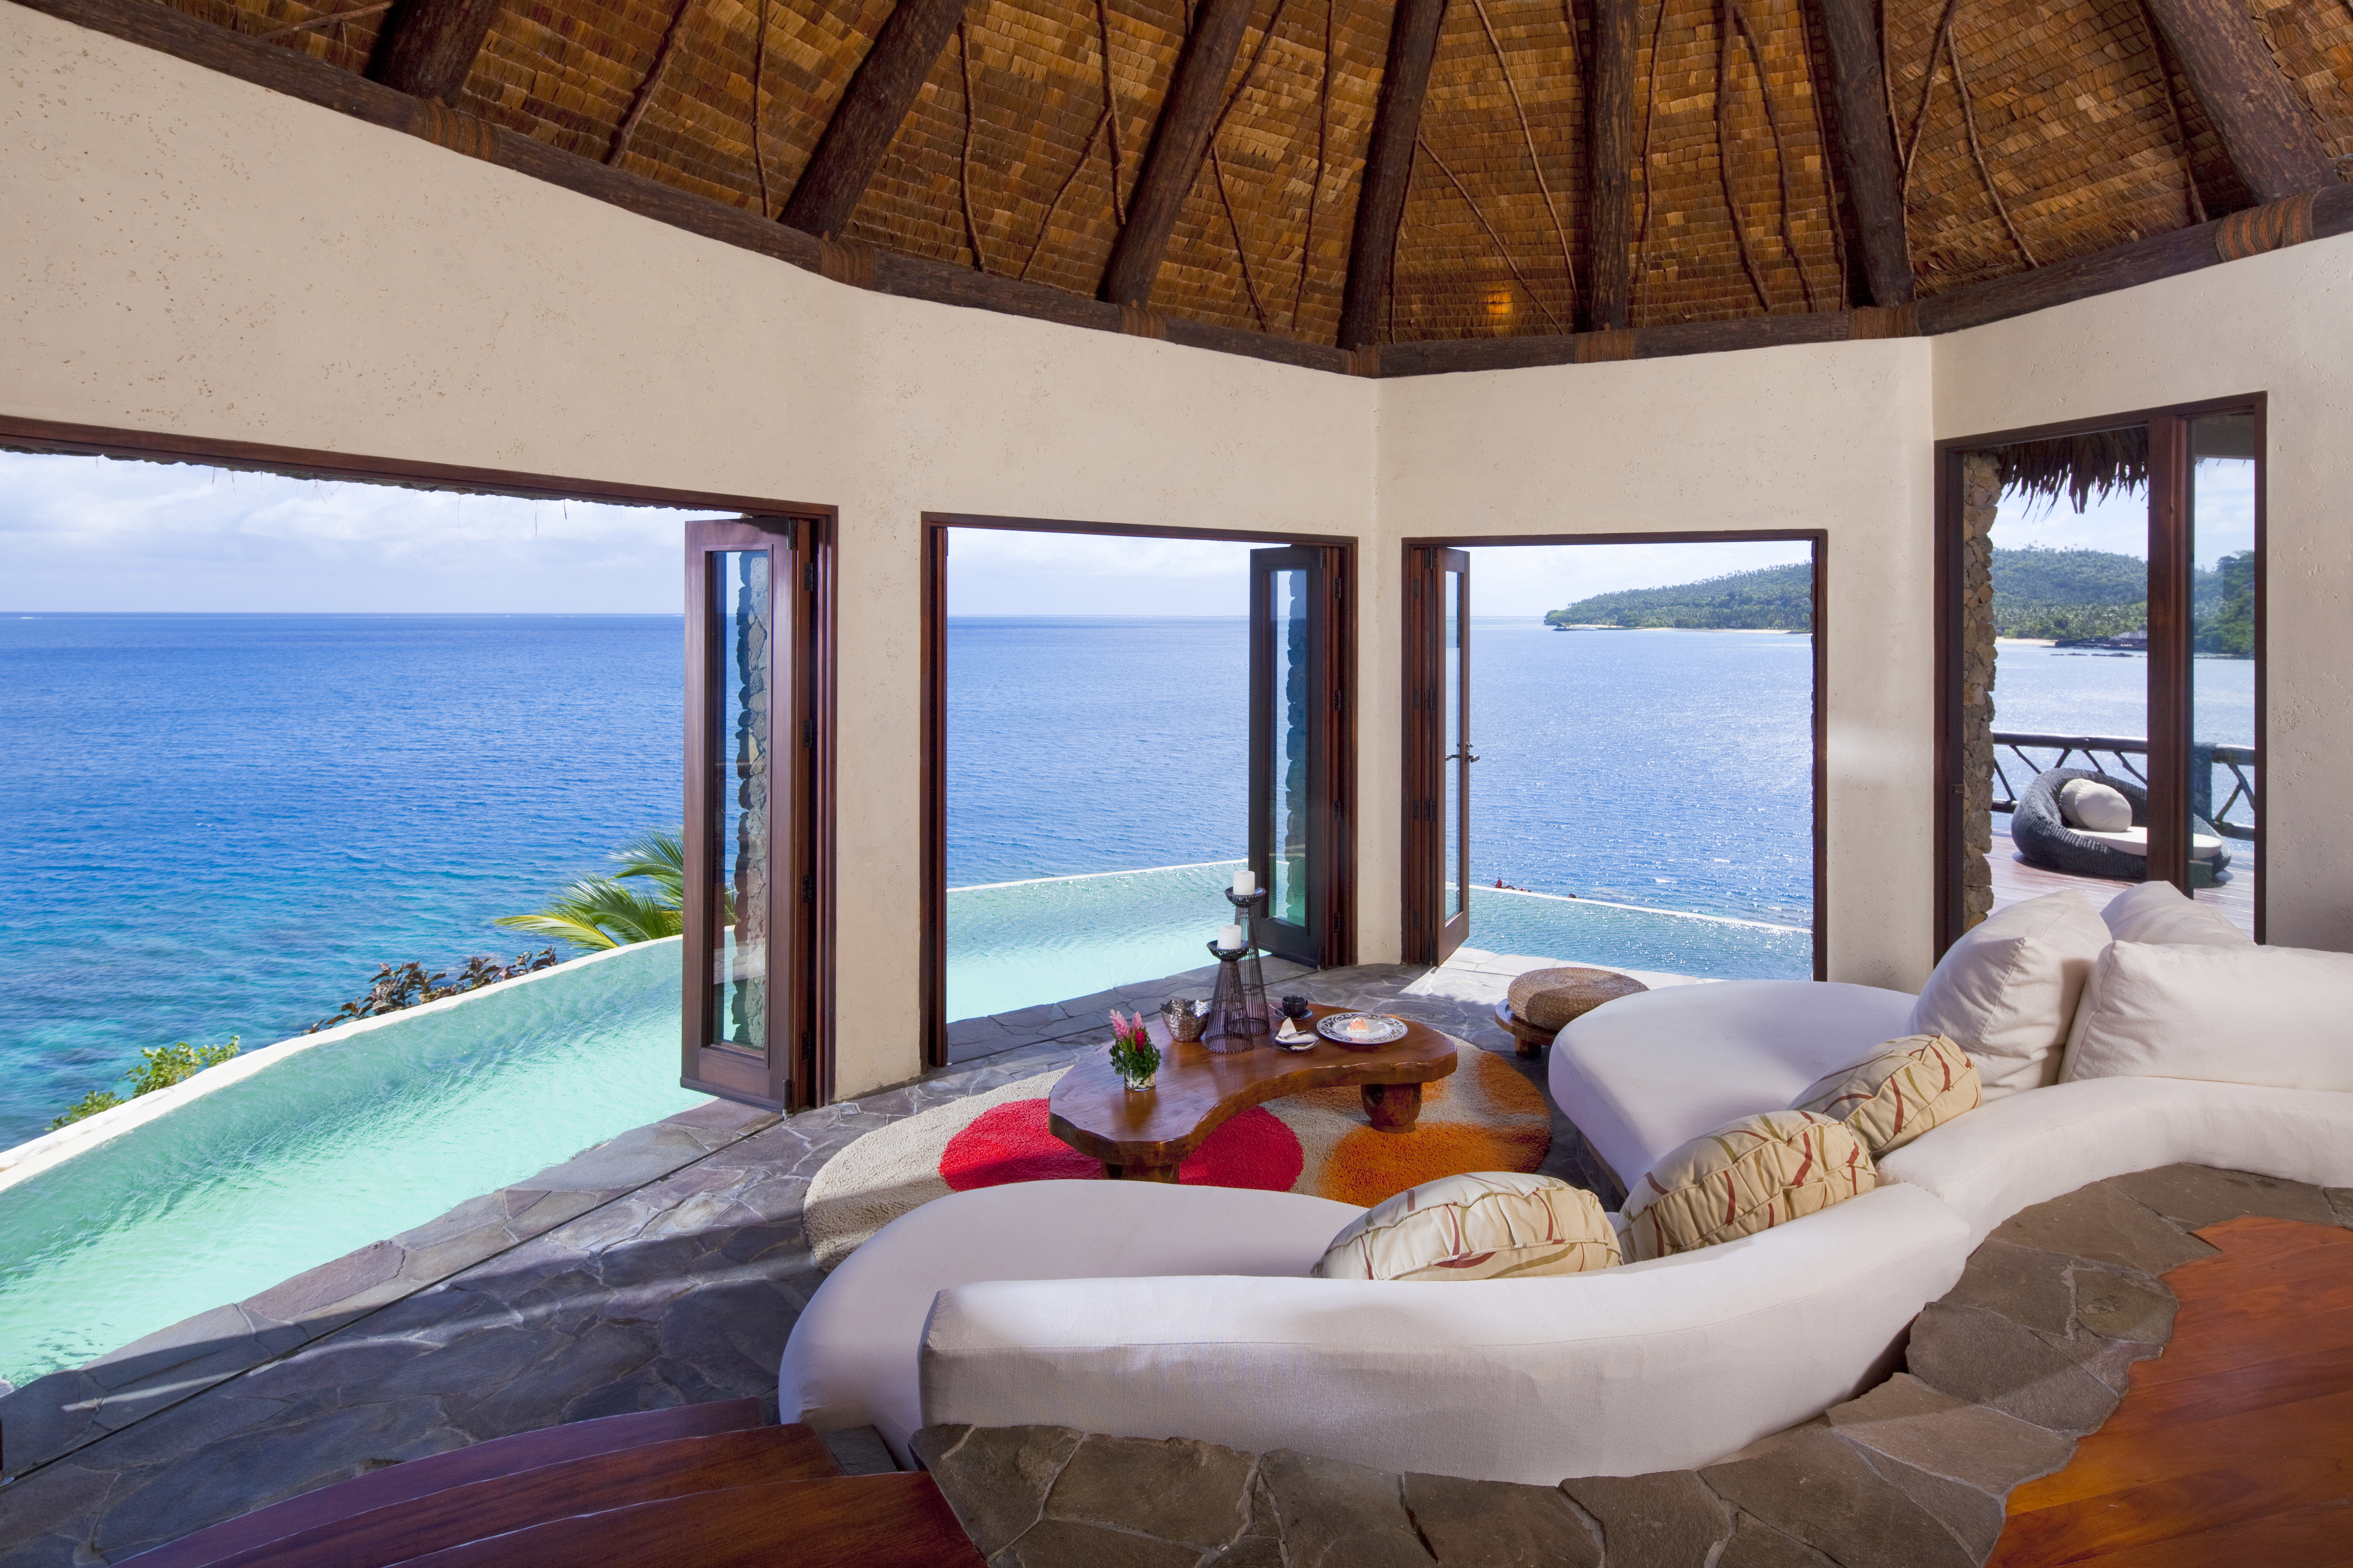 Prepare to pay $4,800 a night in a Laucala Island villa.